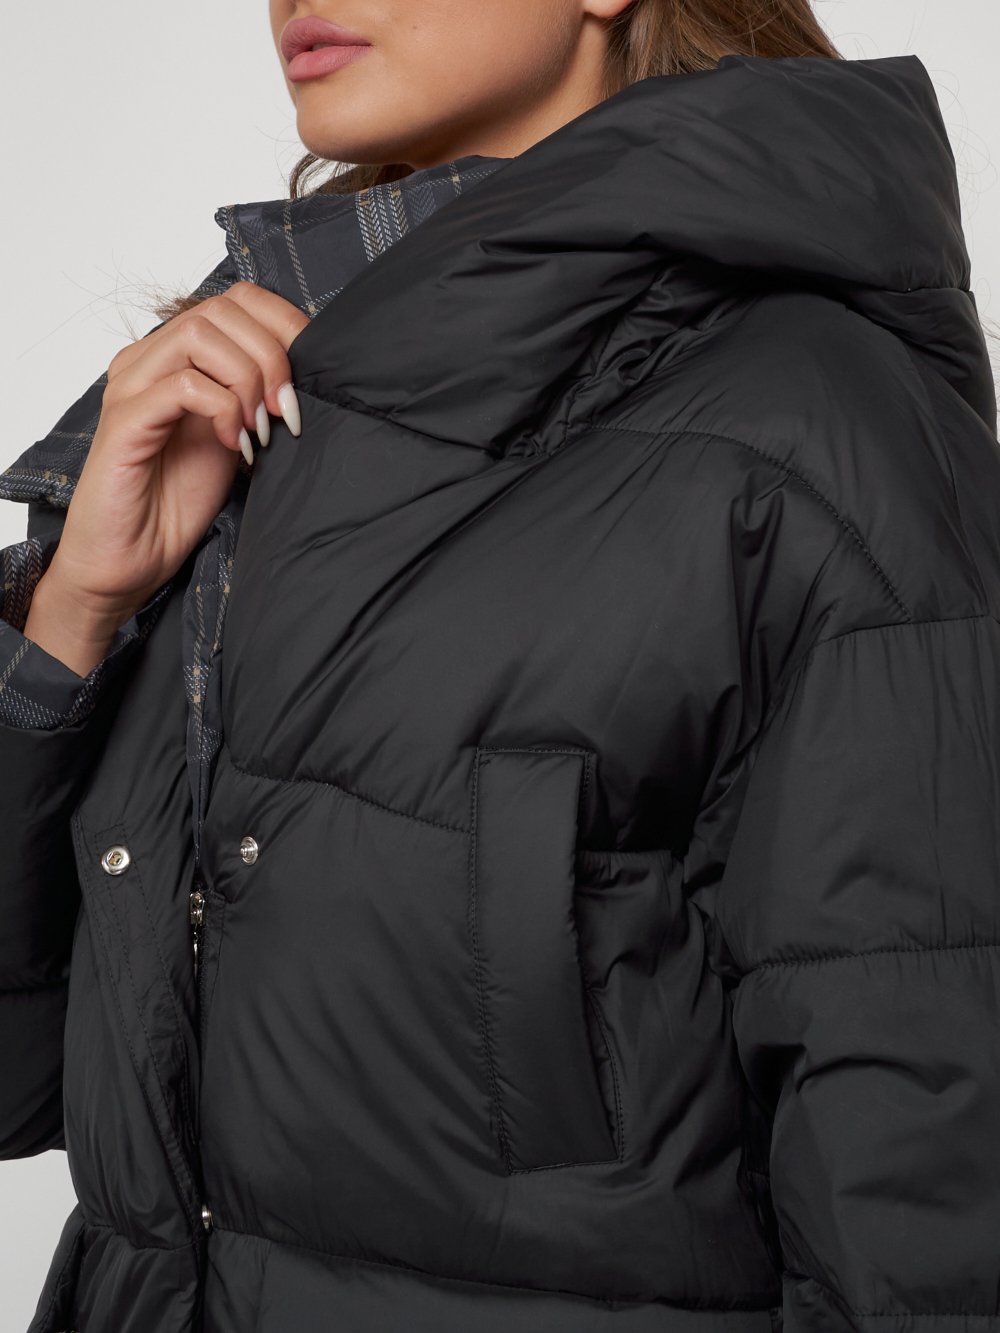 Купить куртку женскую зимнюю оптом от производителя недорого в Москве 133105Ch 1